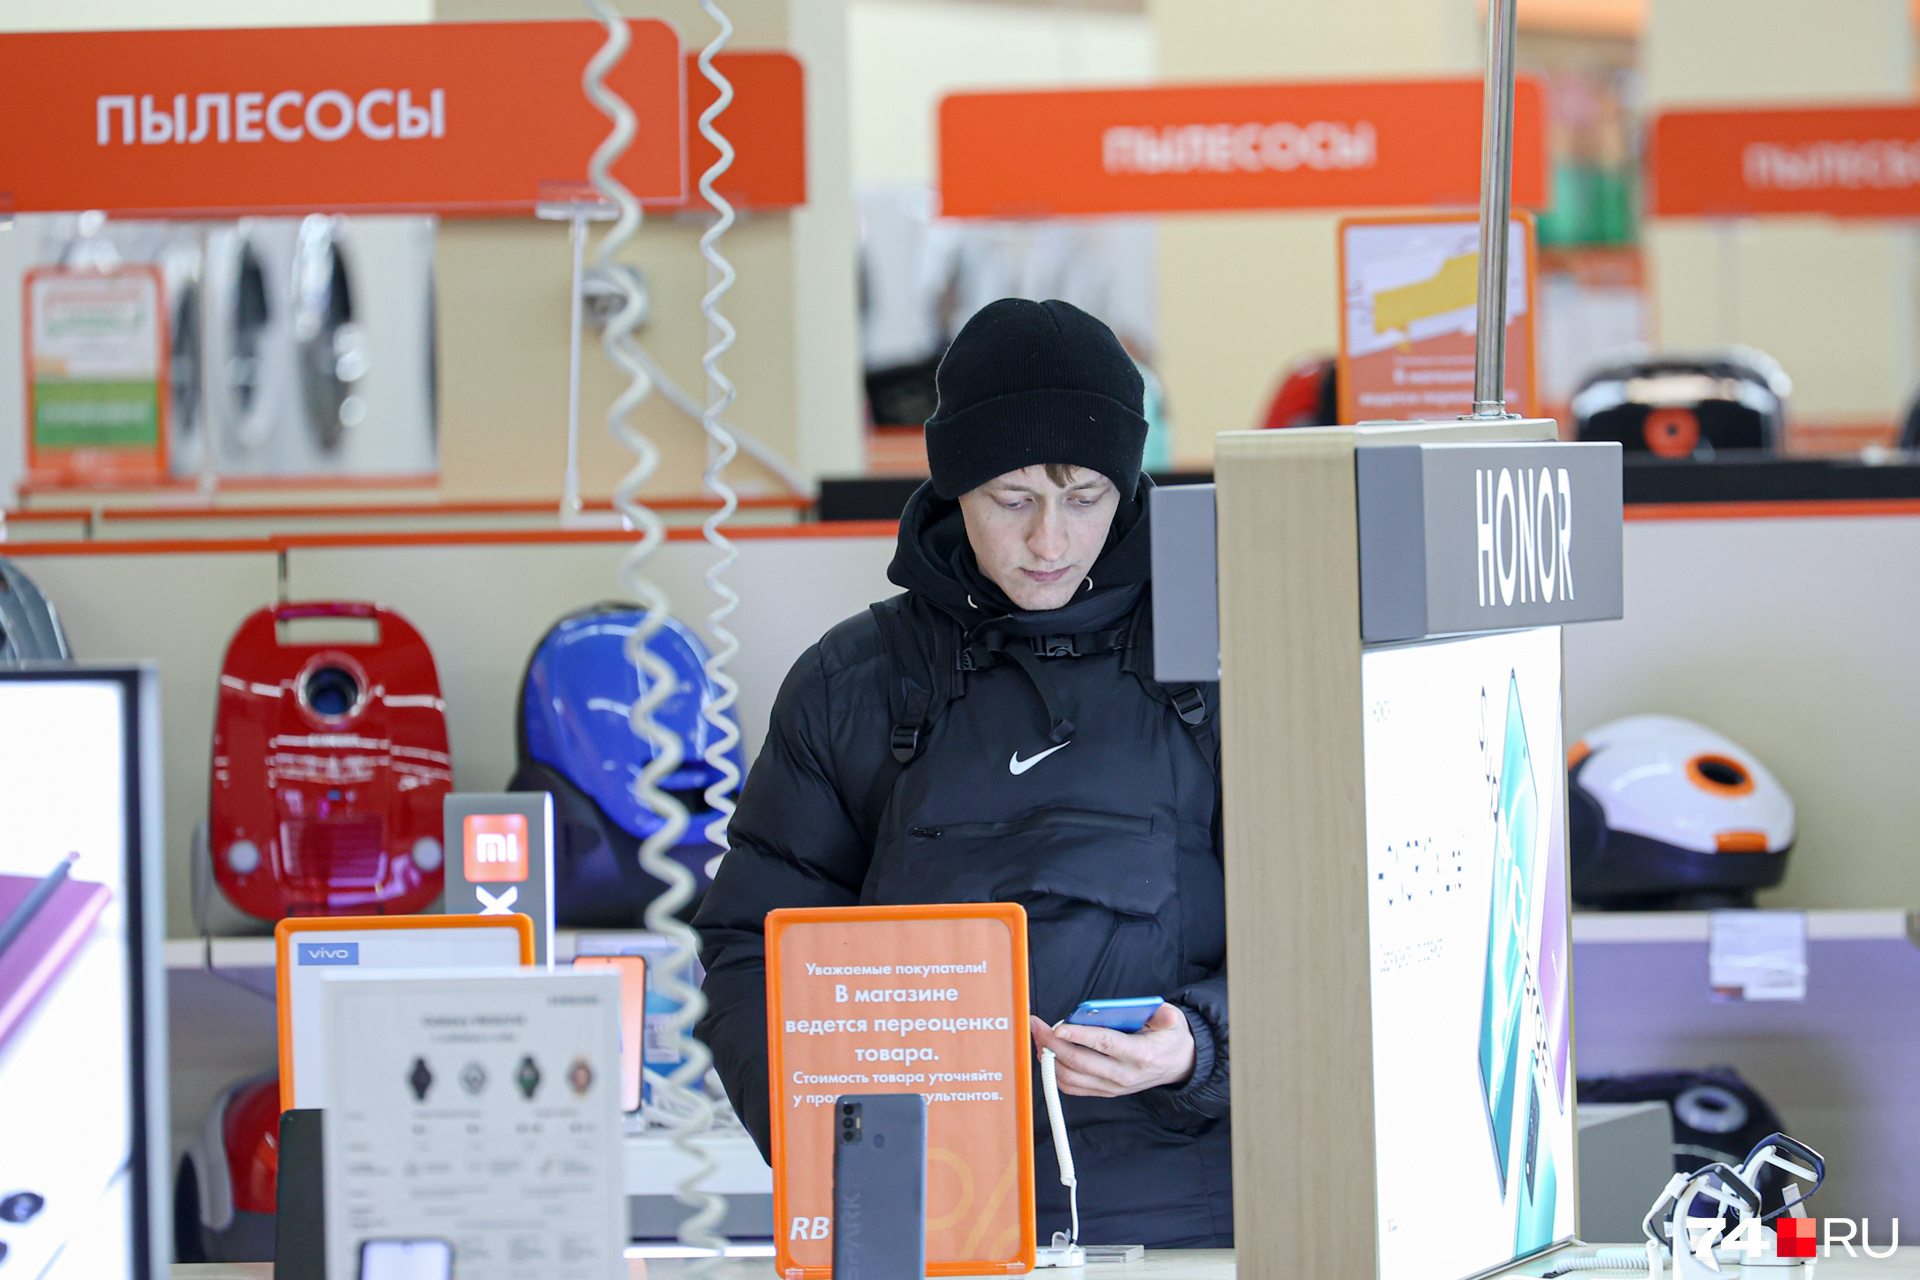 Директор магазина в Забайкалье обворовала свой магазин ради ставок на спорт